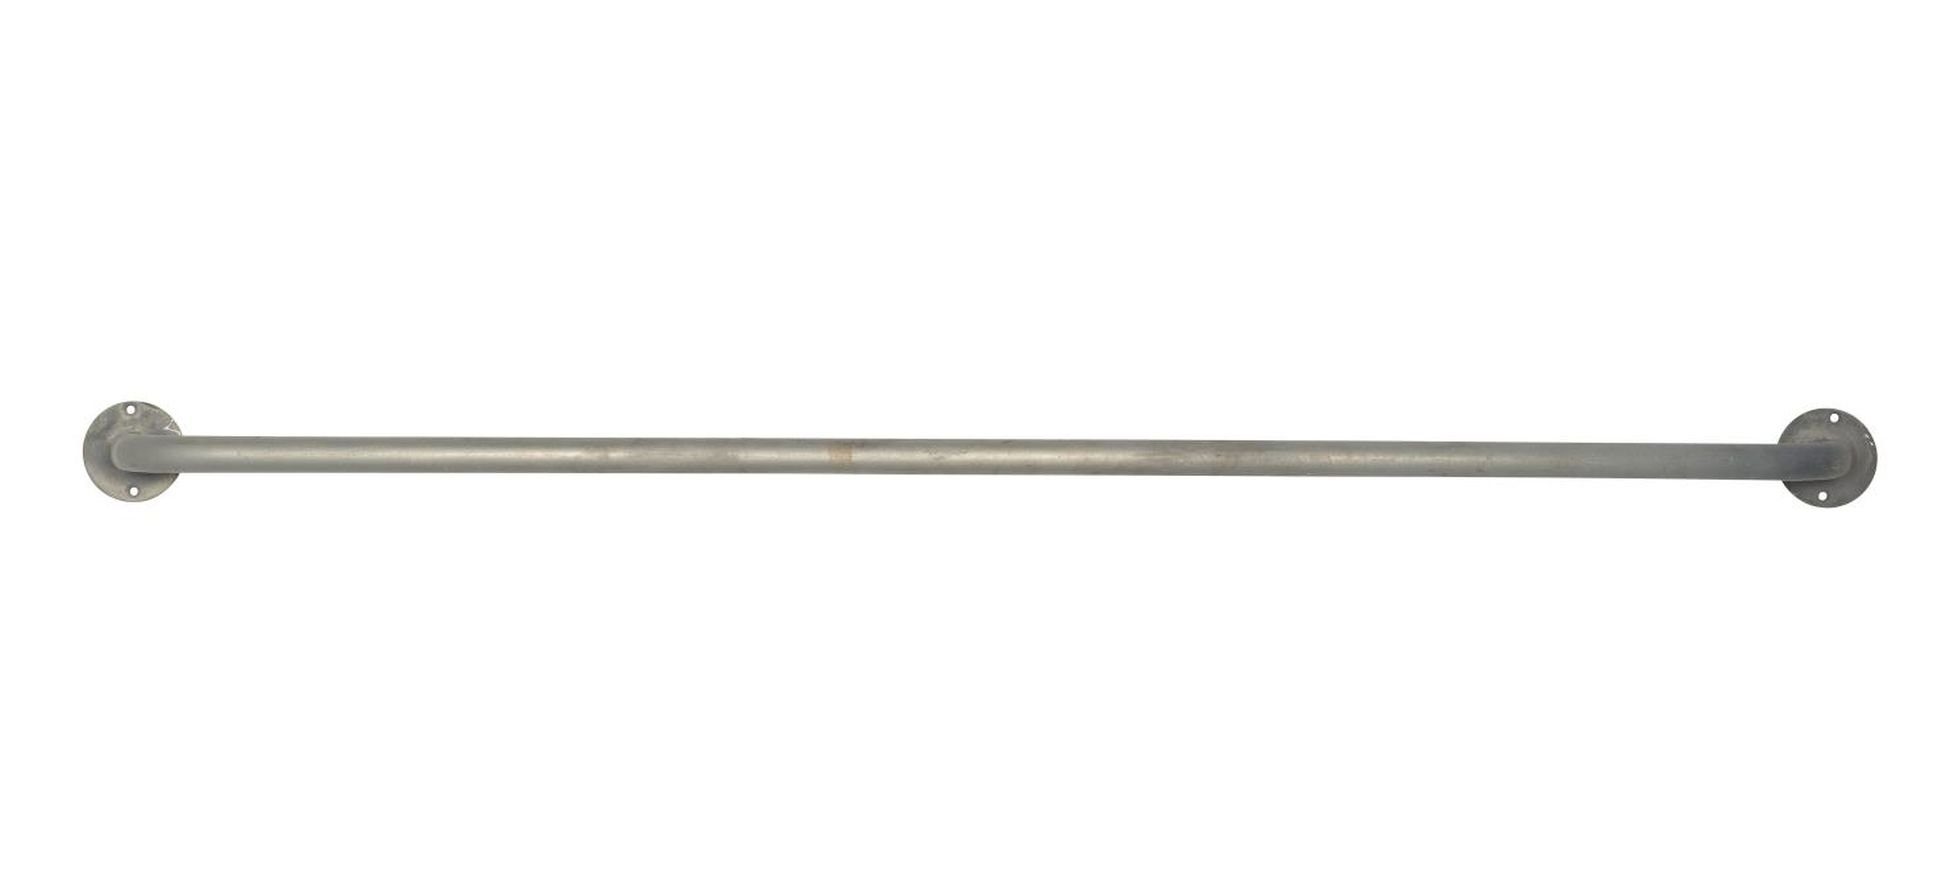 Ib Laursen Handtuchstange Hakenleiste Wandstange Handtuchstange L 94cm  Metall Ib Laursen 5782-18 | Handtuchstangen